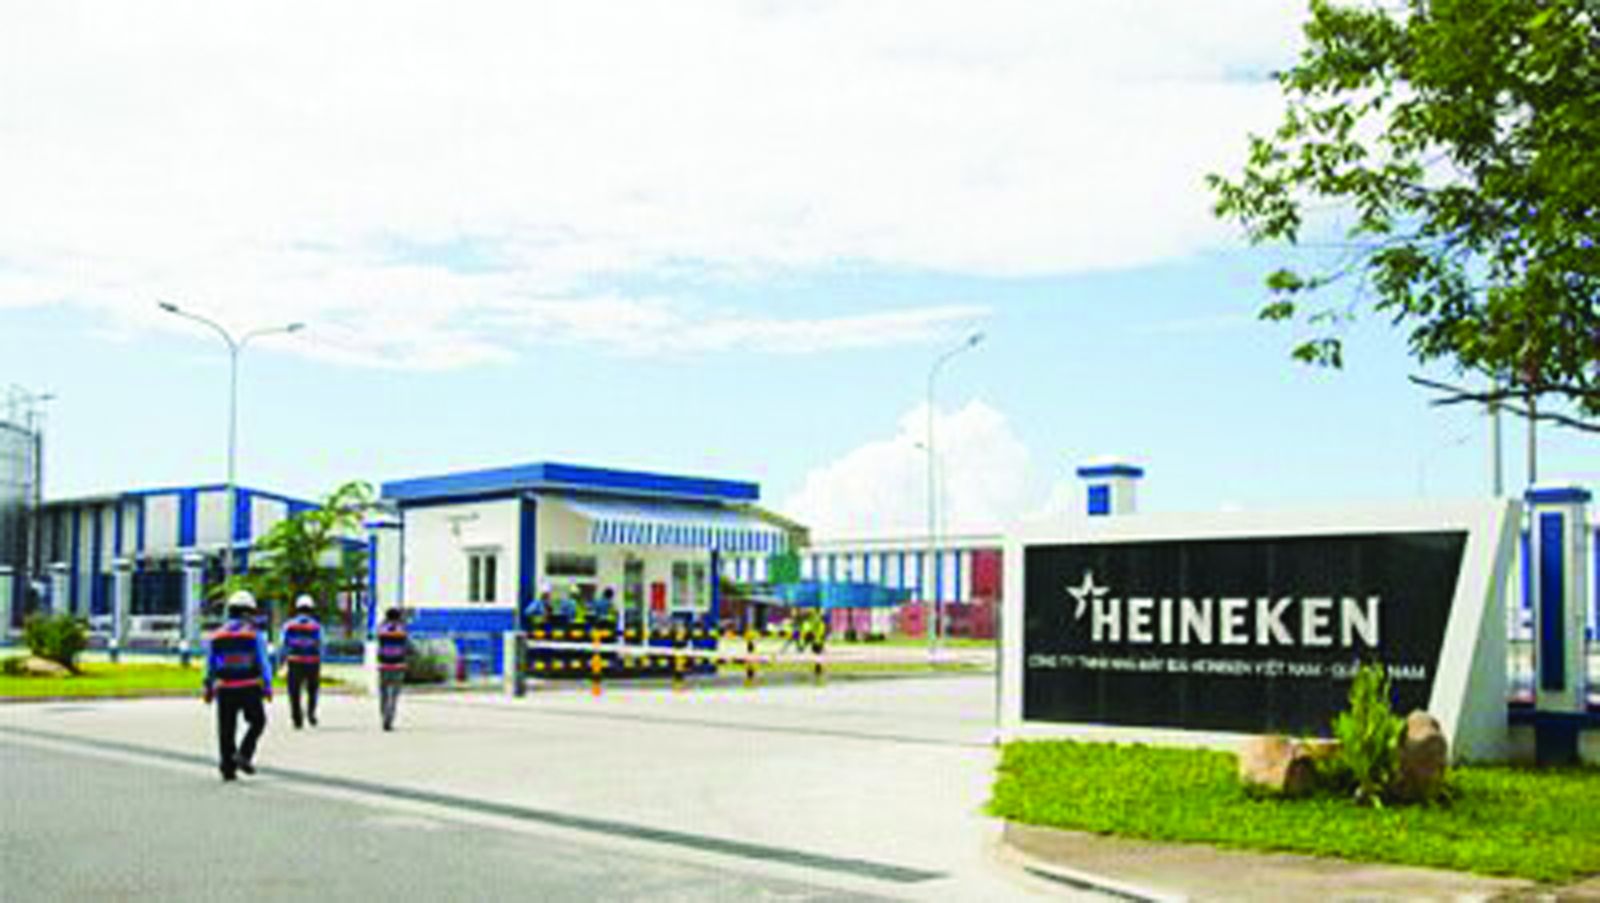 Thanh tra Tổng cục Thuế vừa ban hành kết luận thanh tra và quyết định xử lý thu thương vụ chuyển nhượng vốn Công ty Heineken Hà Nội với số tiền 917 tỷ đồng.